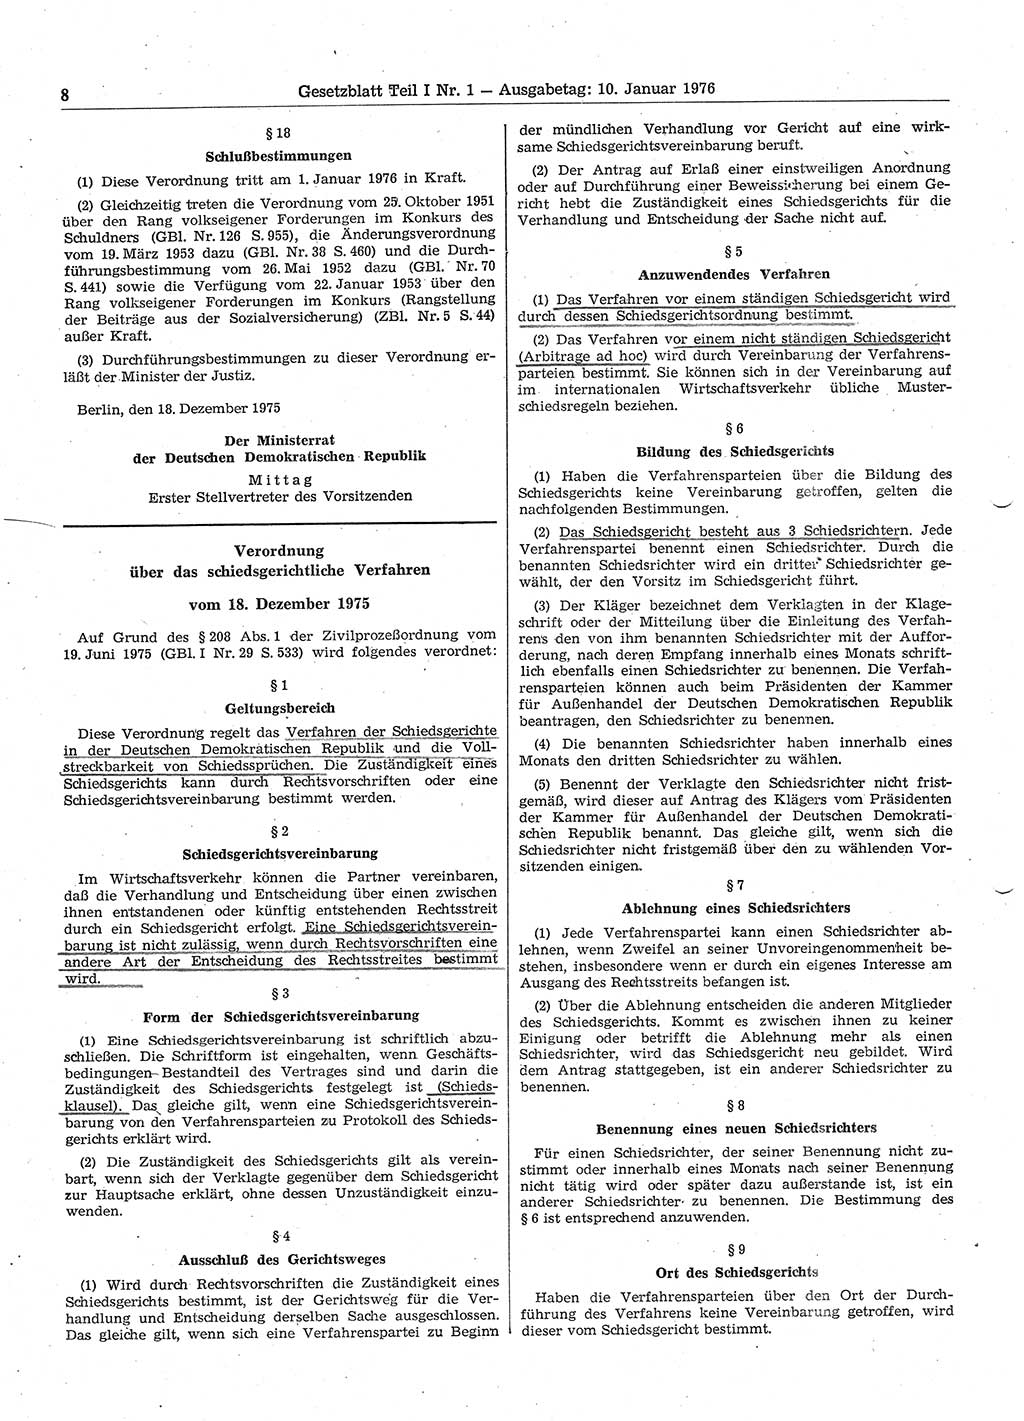 Gesetzblatt (GBl.) der Deutschen Demokratischen Republik (DDR) Teil Ⅰ 1976, Seite 8 (GBl. DDR Ⅰ 1976, S. 8)